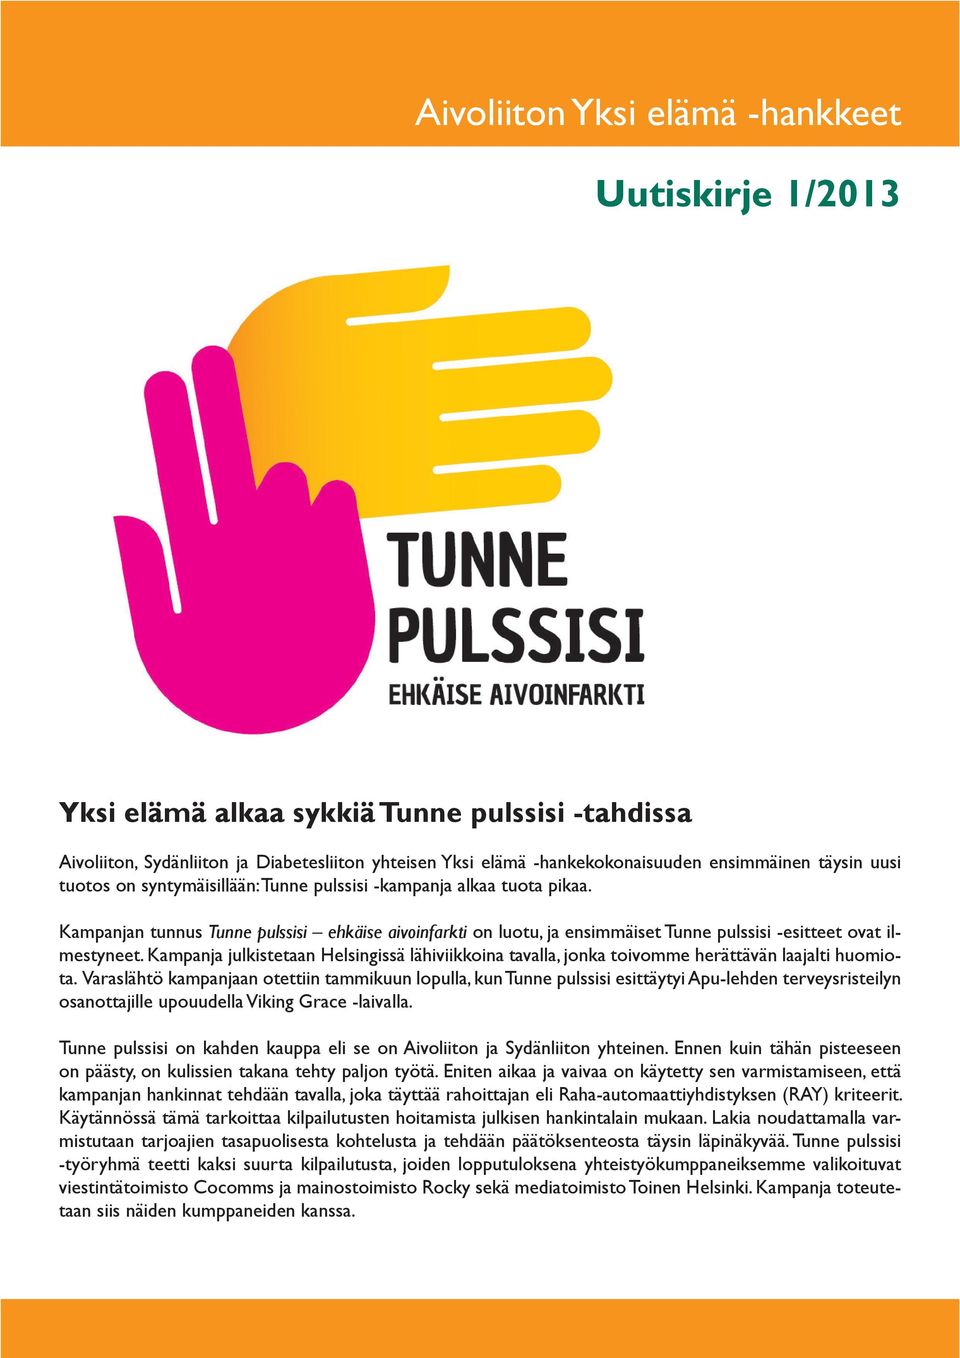 Kampanja julkistetaan Helsingissä lähiviikkoina tavalla, jonka toivomme herättävän laajalti huomiota.